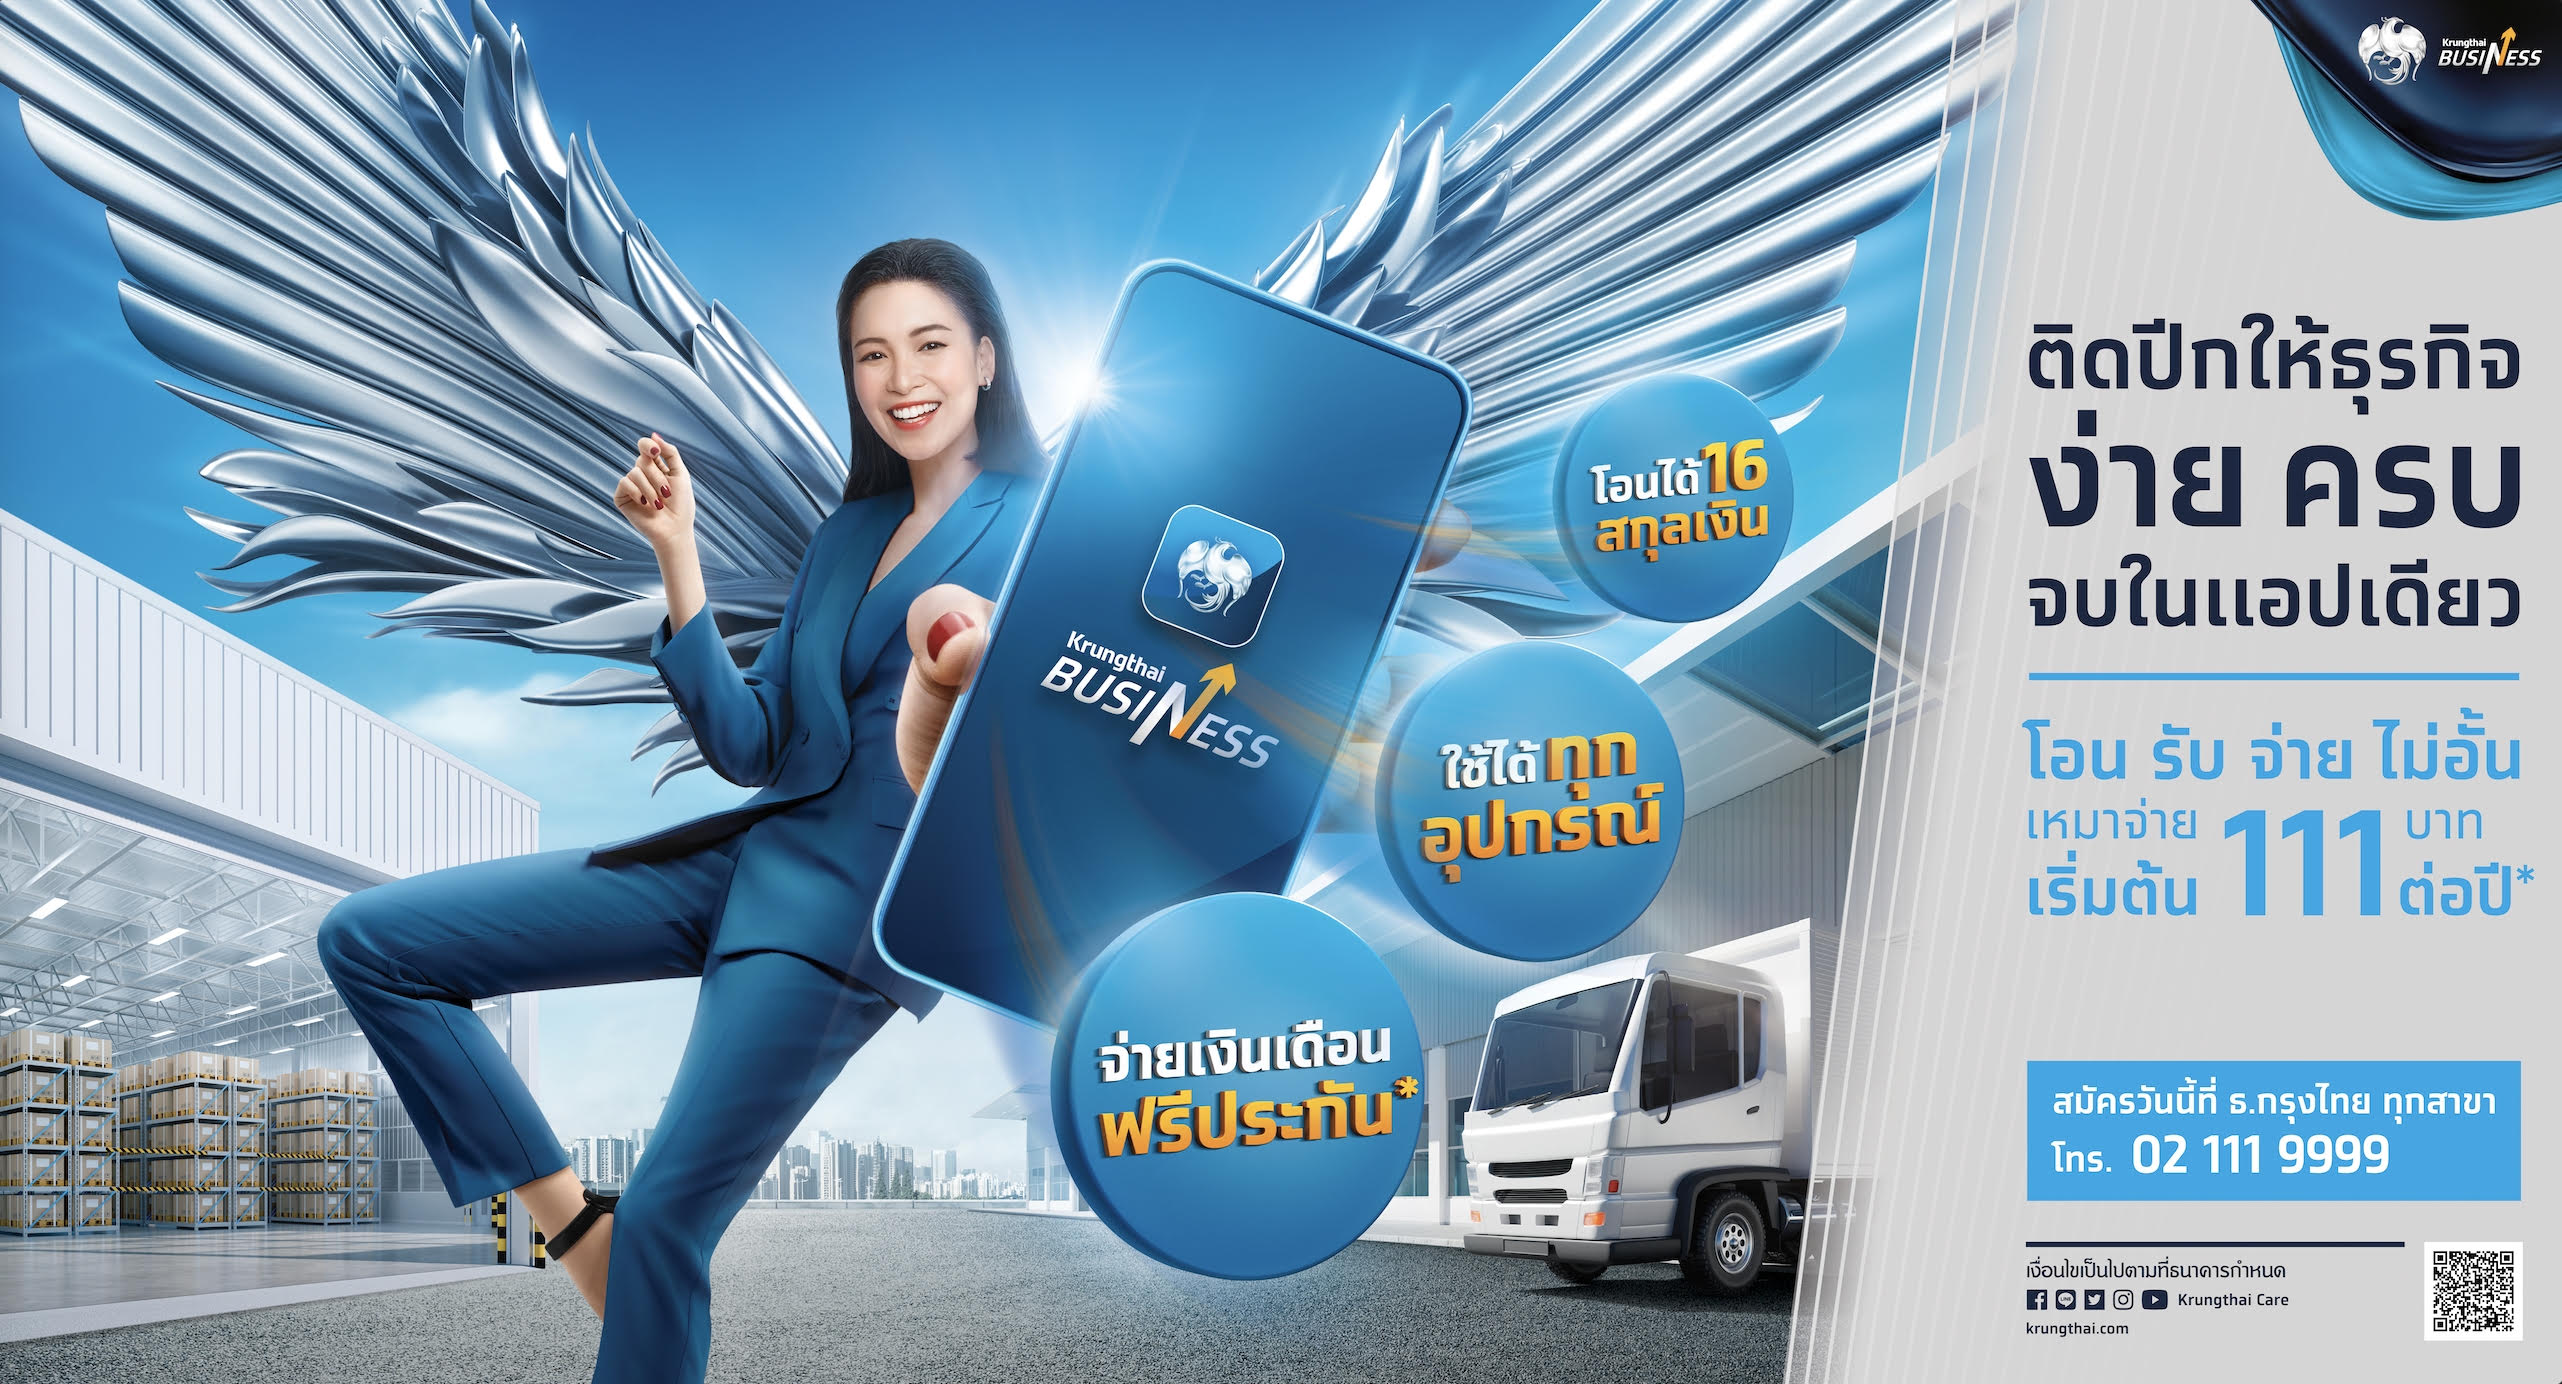 กรุงไทยเปิดตัวแอปฯ “Krungthai Business” ติดปีกธุรกิจเติบโตยั่งยืน ใช้งานง่าย ครบจบในแอปฯ เดียว 